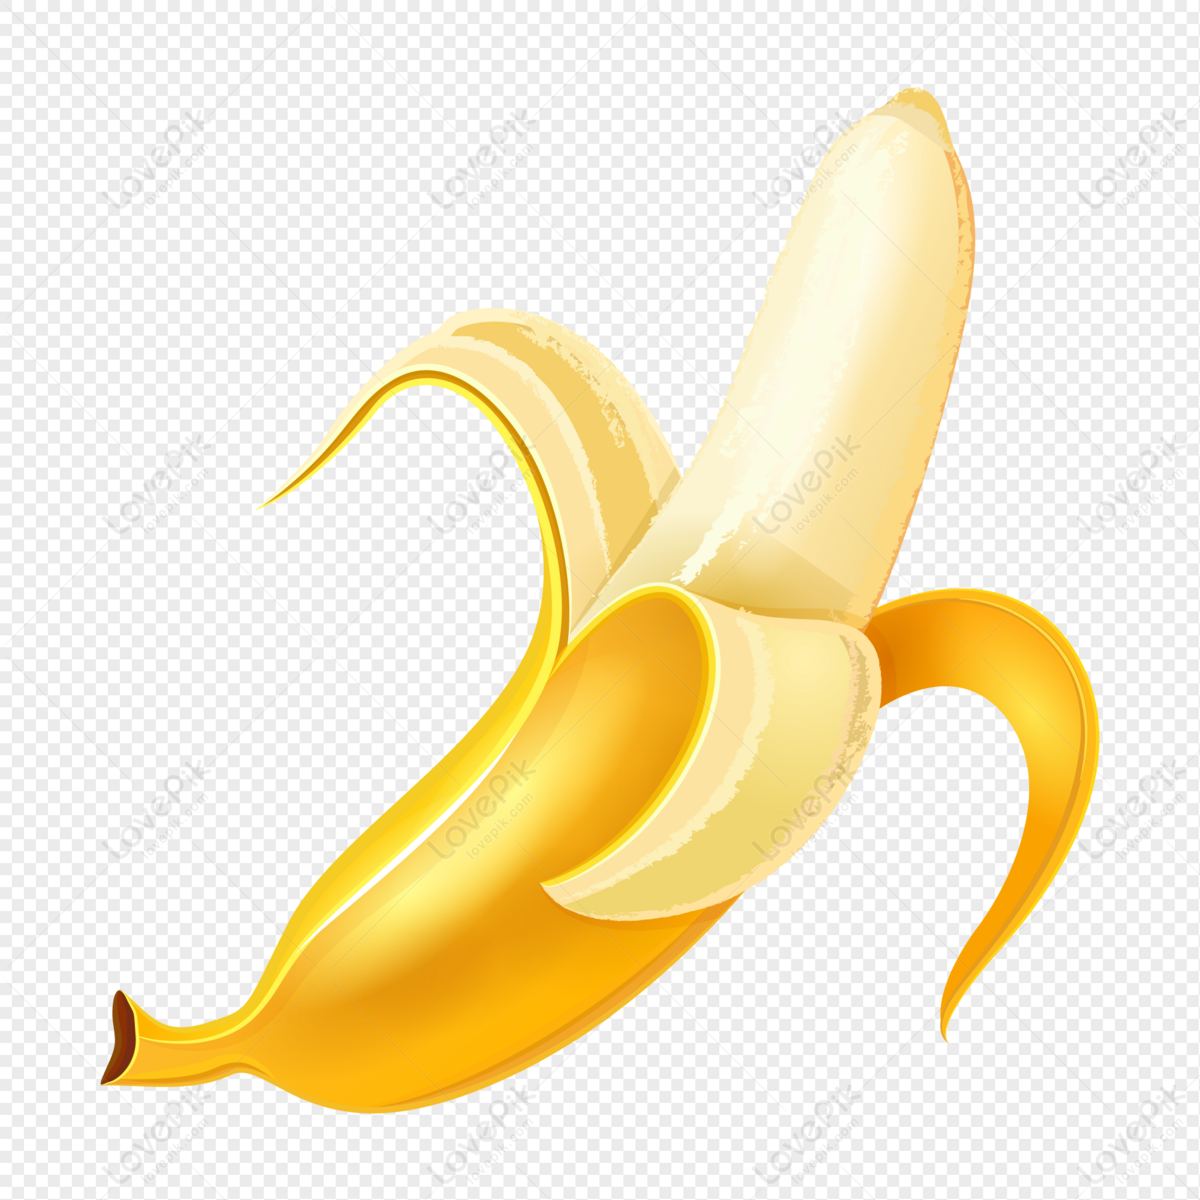 Logo of a realistic banana fries on Craiyon